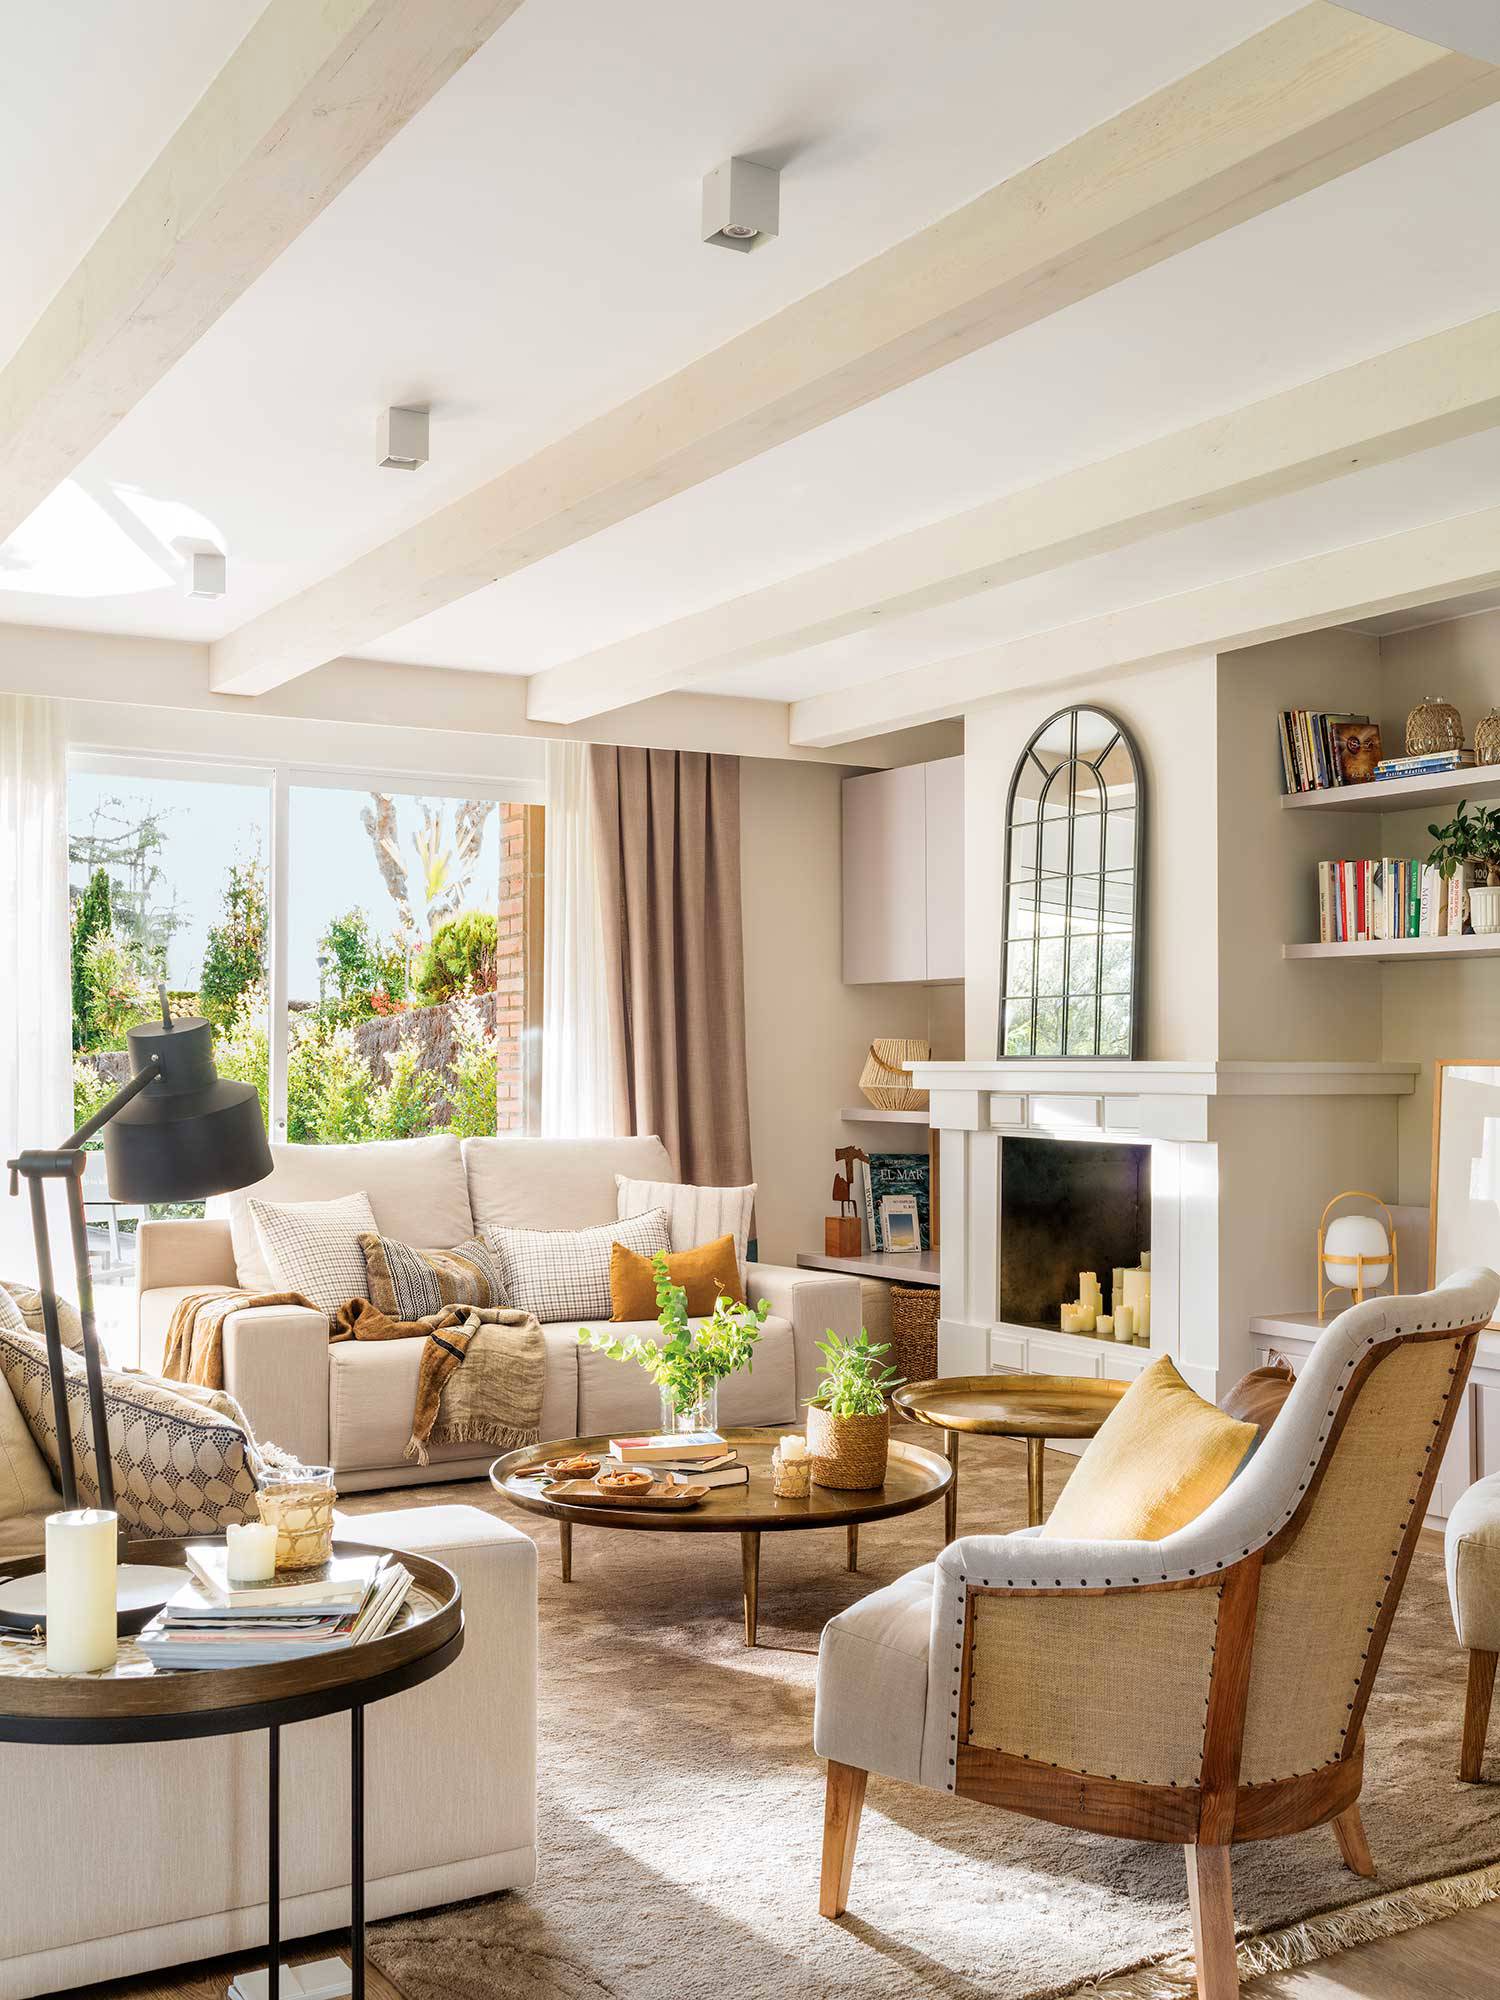 Salón con chimenea, sofás de tela beige y mesas redondas bajas de metal dorado.